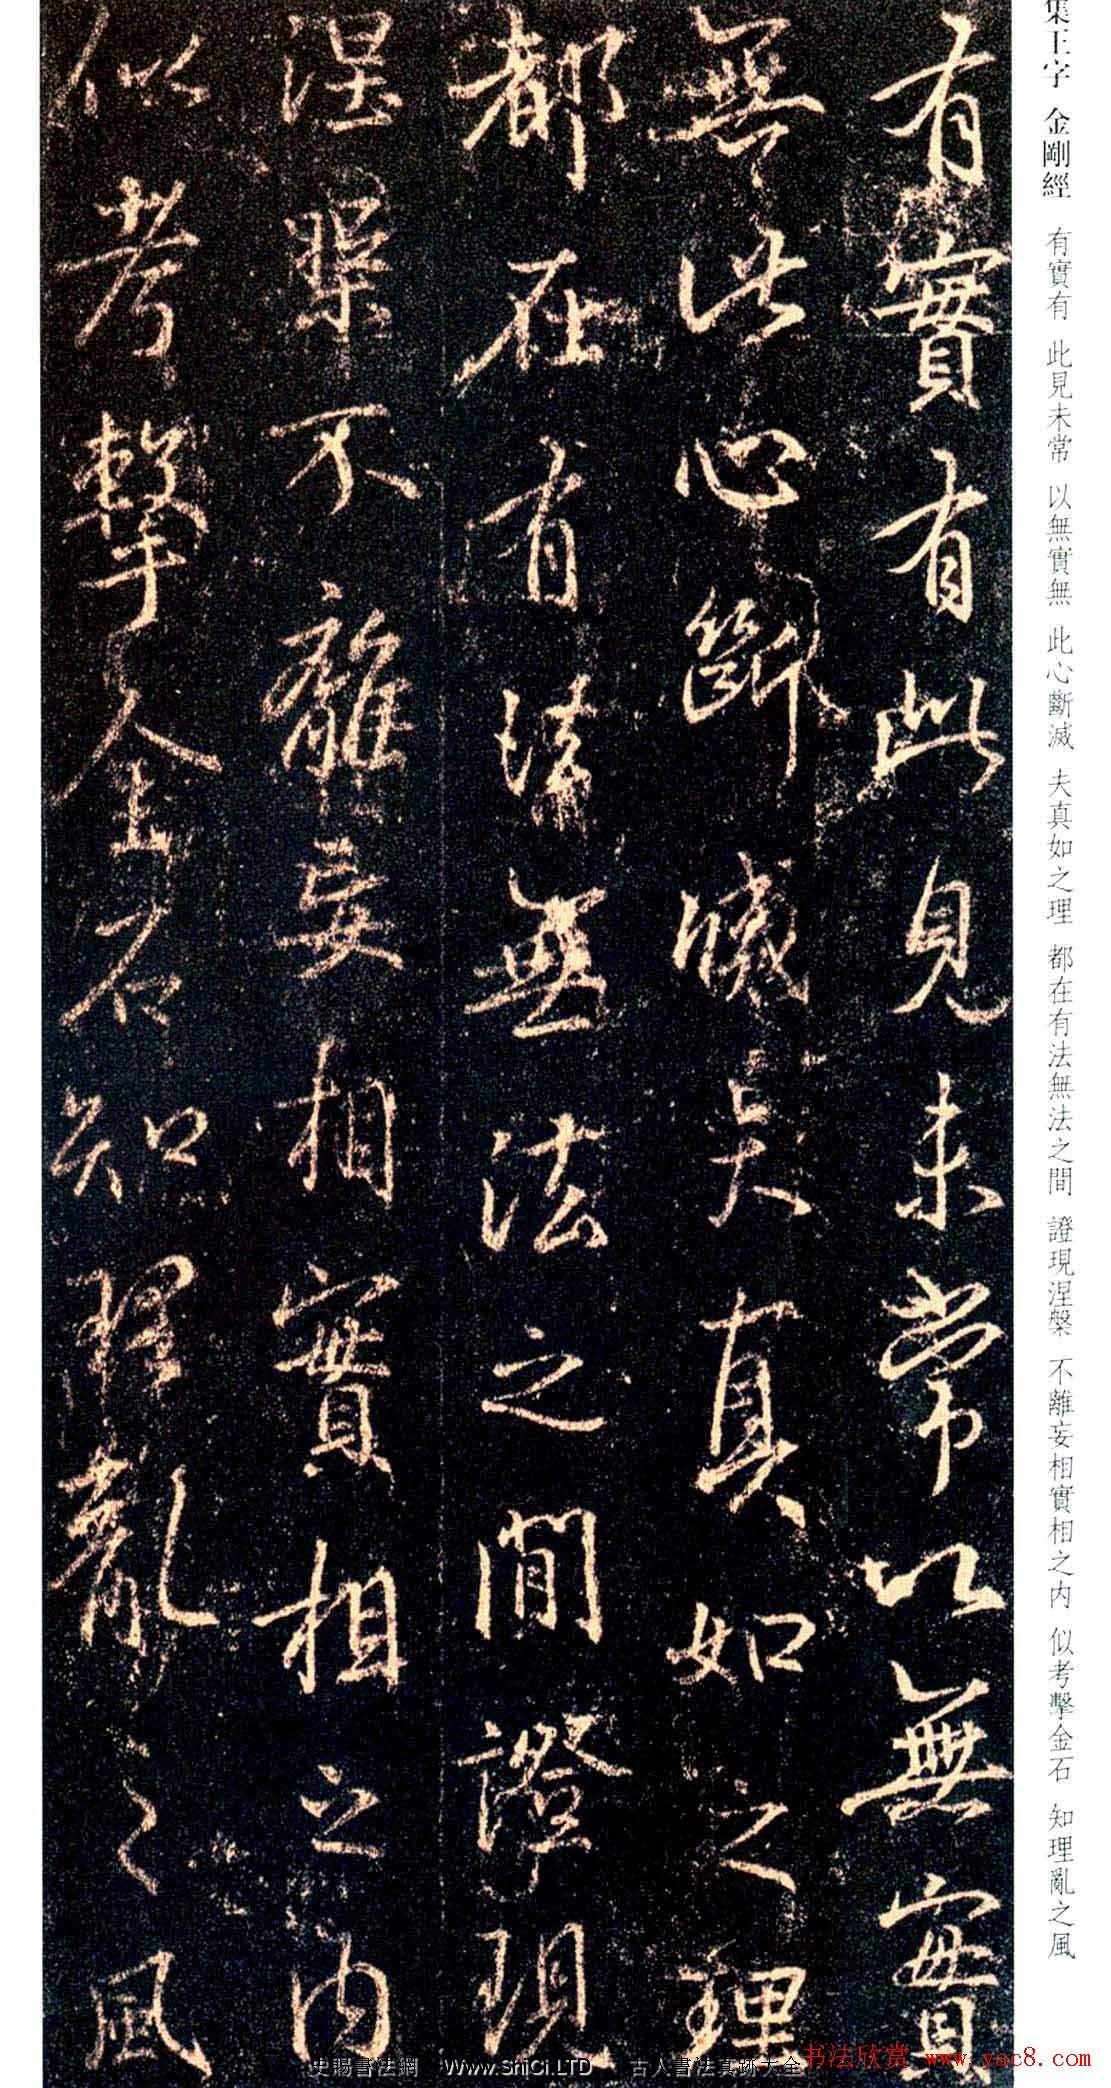 唐代の行書の碑文「新集王羲之書金剛経」（全部で111枚の写真）